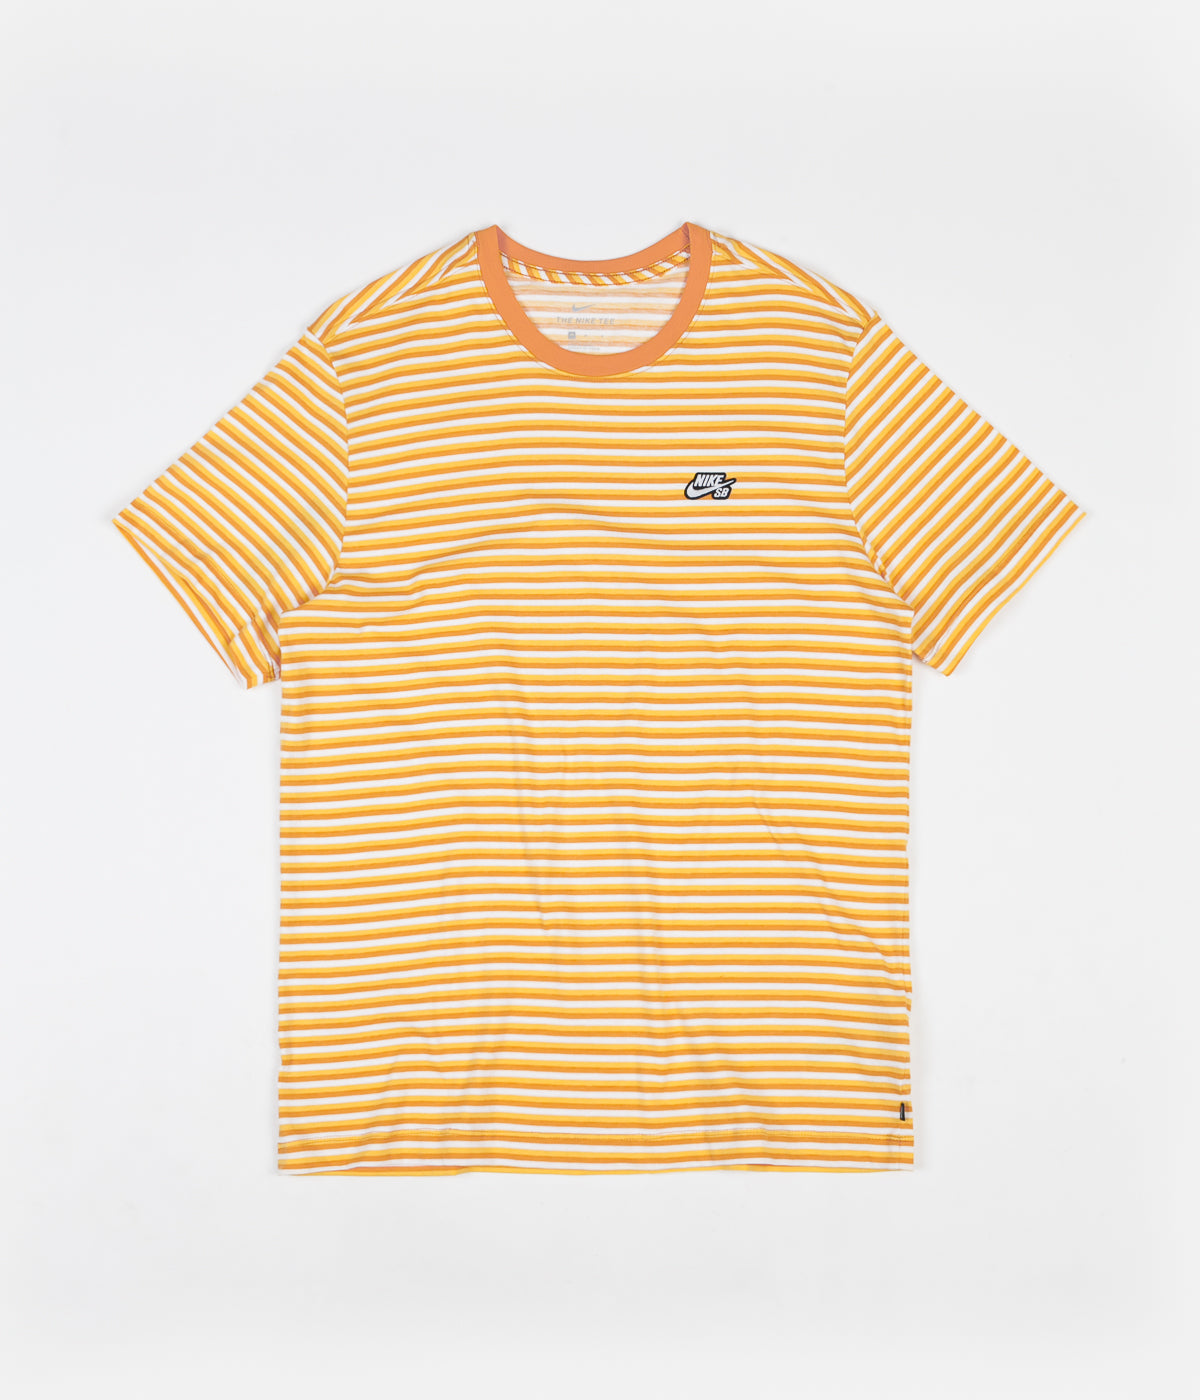 yellow and orange nike shirt